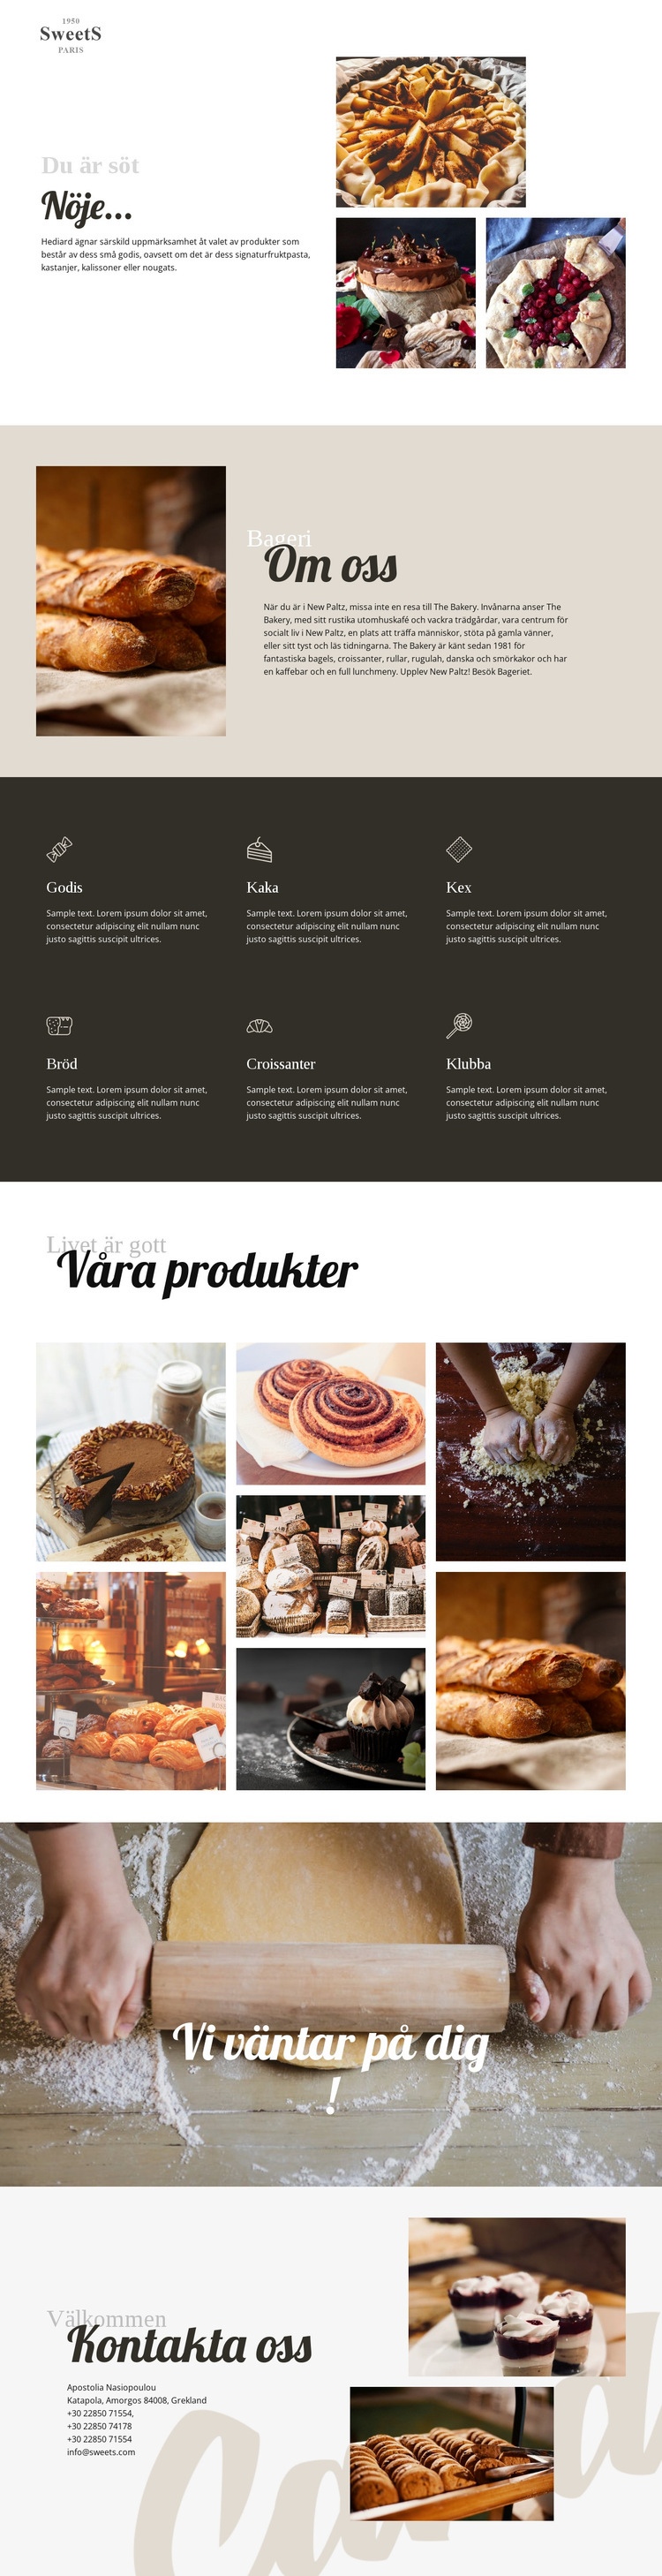 Kakor och bakning av mat WordPress -tema